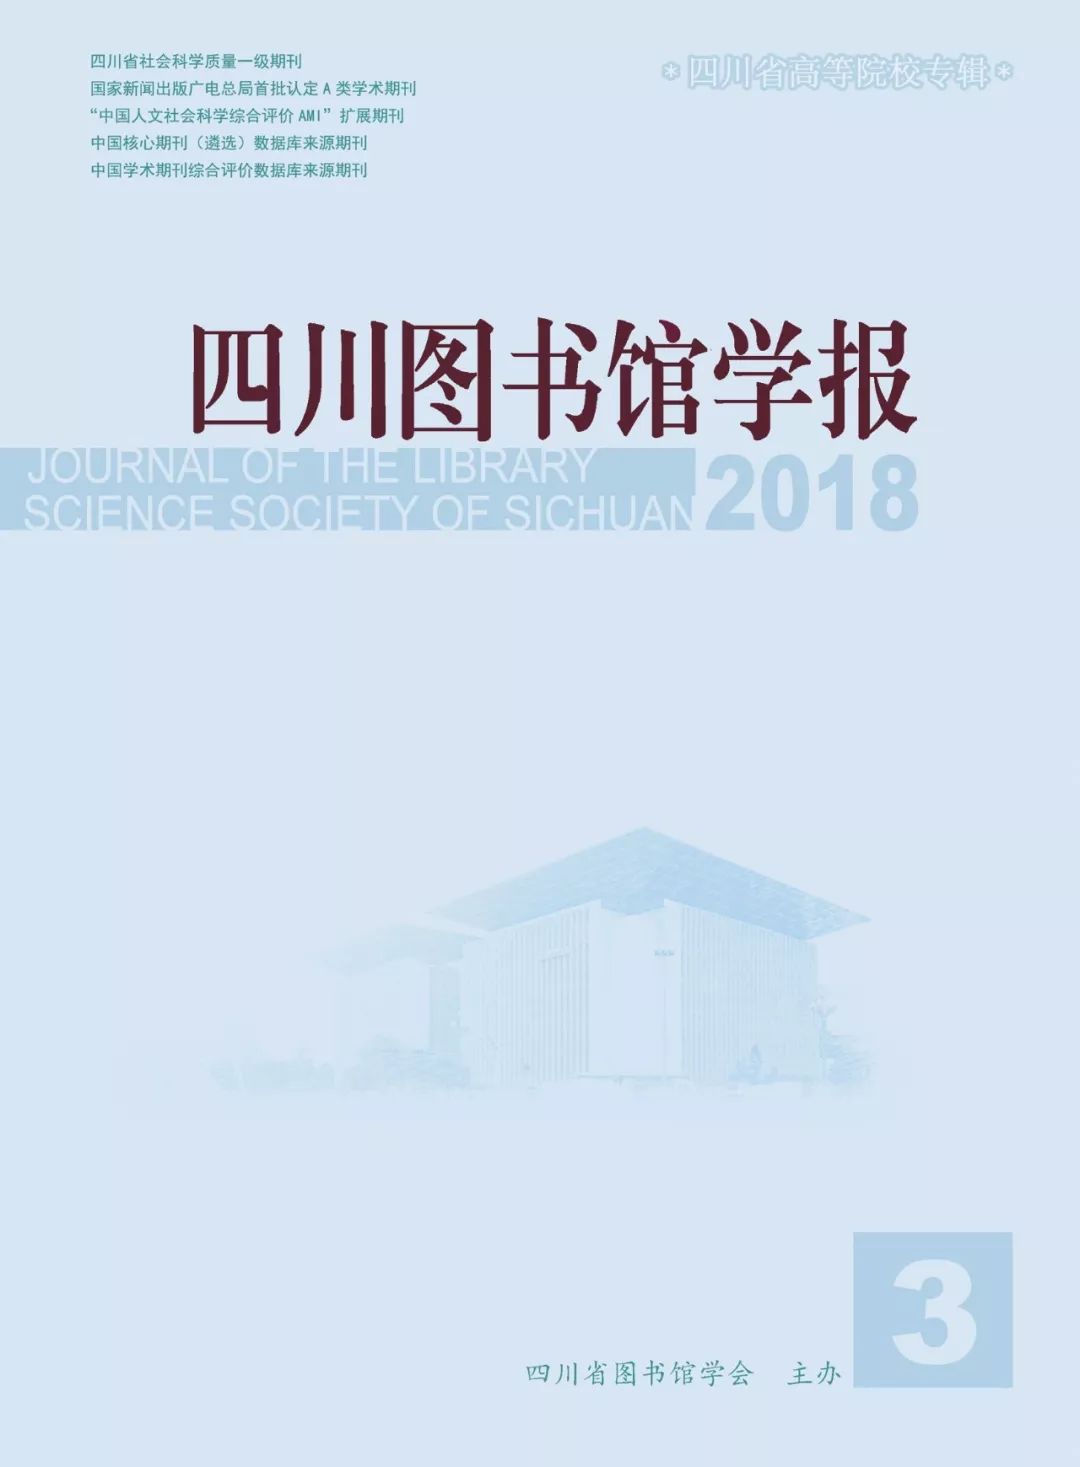 《四川图书馆学报》2018年第三期目录